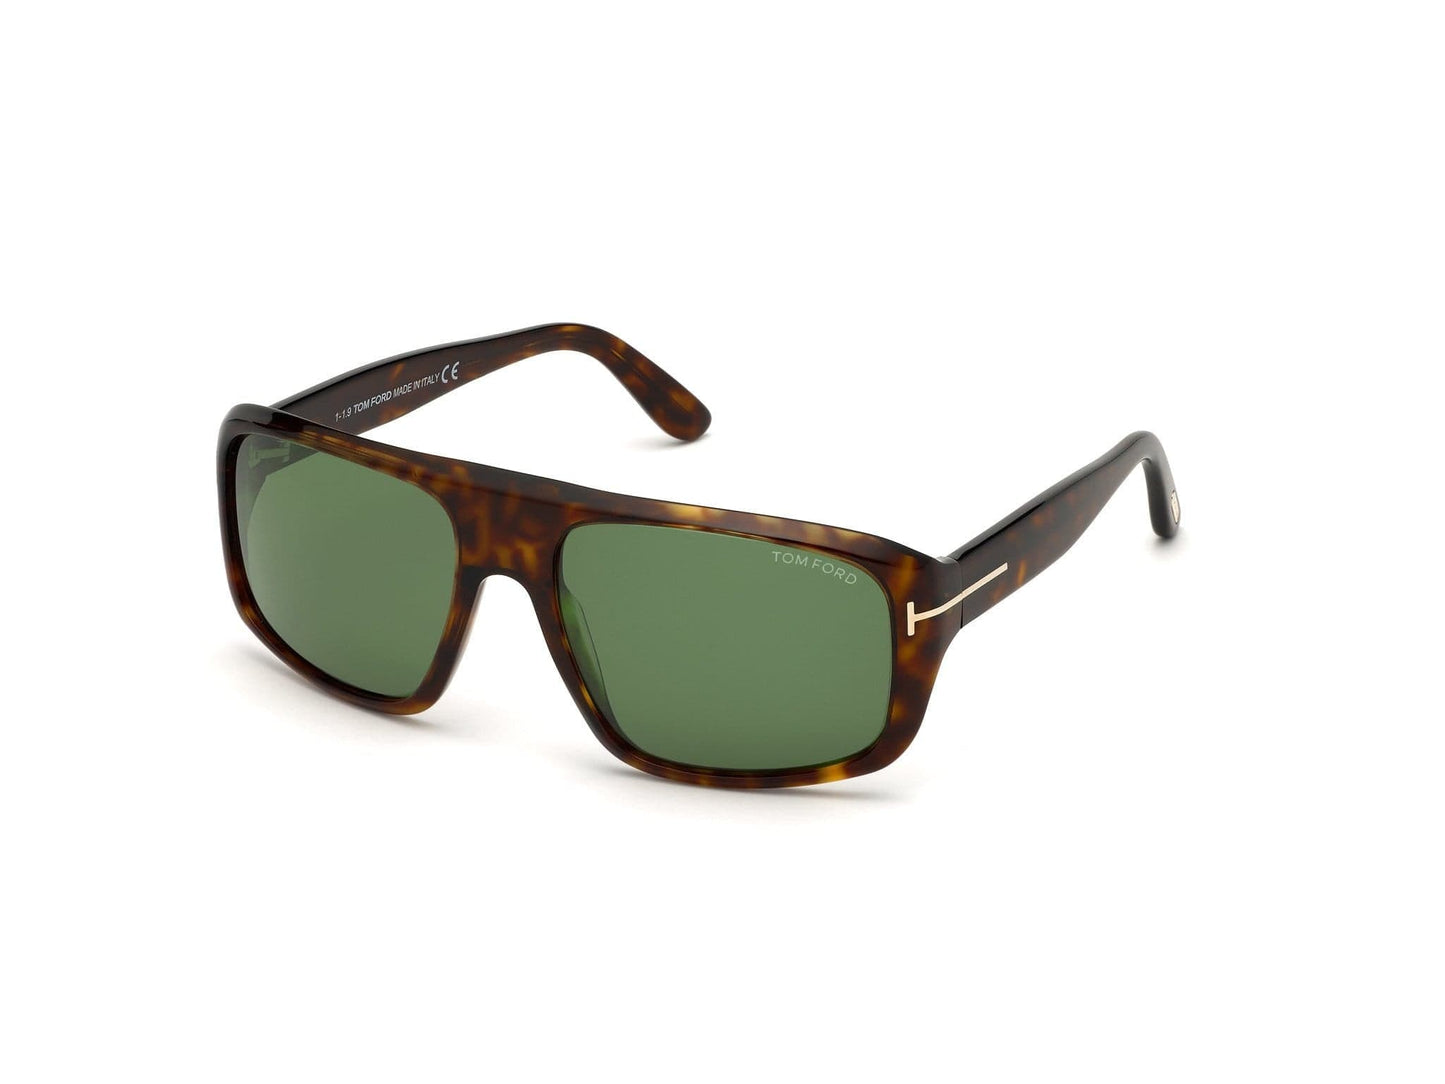 Tom Ford FT0754 Duke Navigator Sunglasses 52N-52N - Shiny Classic Dark Havana/ Green Lenses